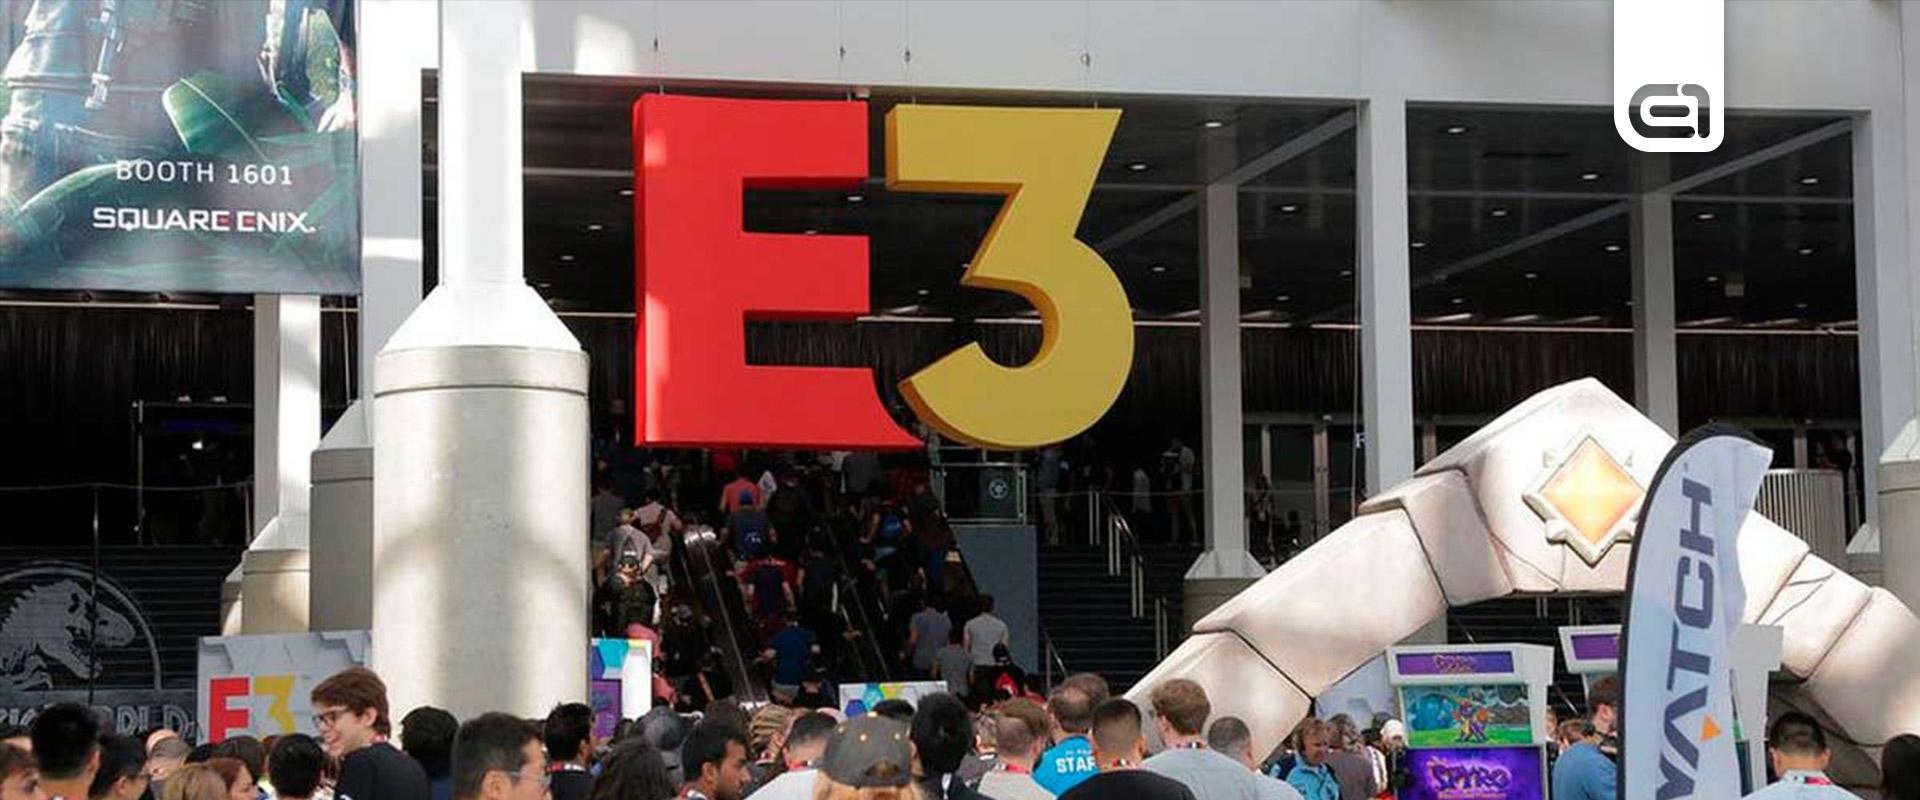 Ismét élőben rendezik meg az E3-at, ám a legnagyobbak nélkül